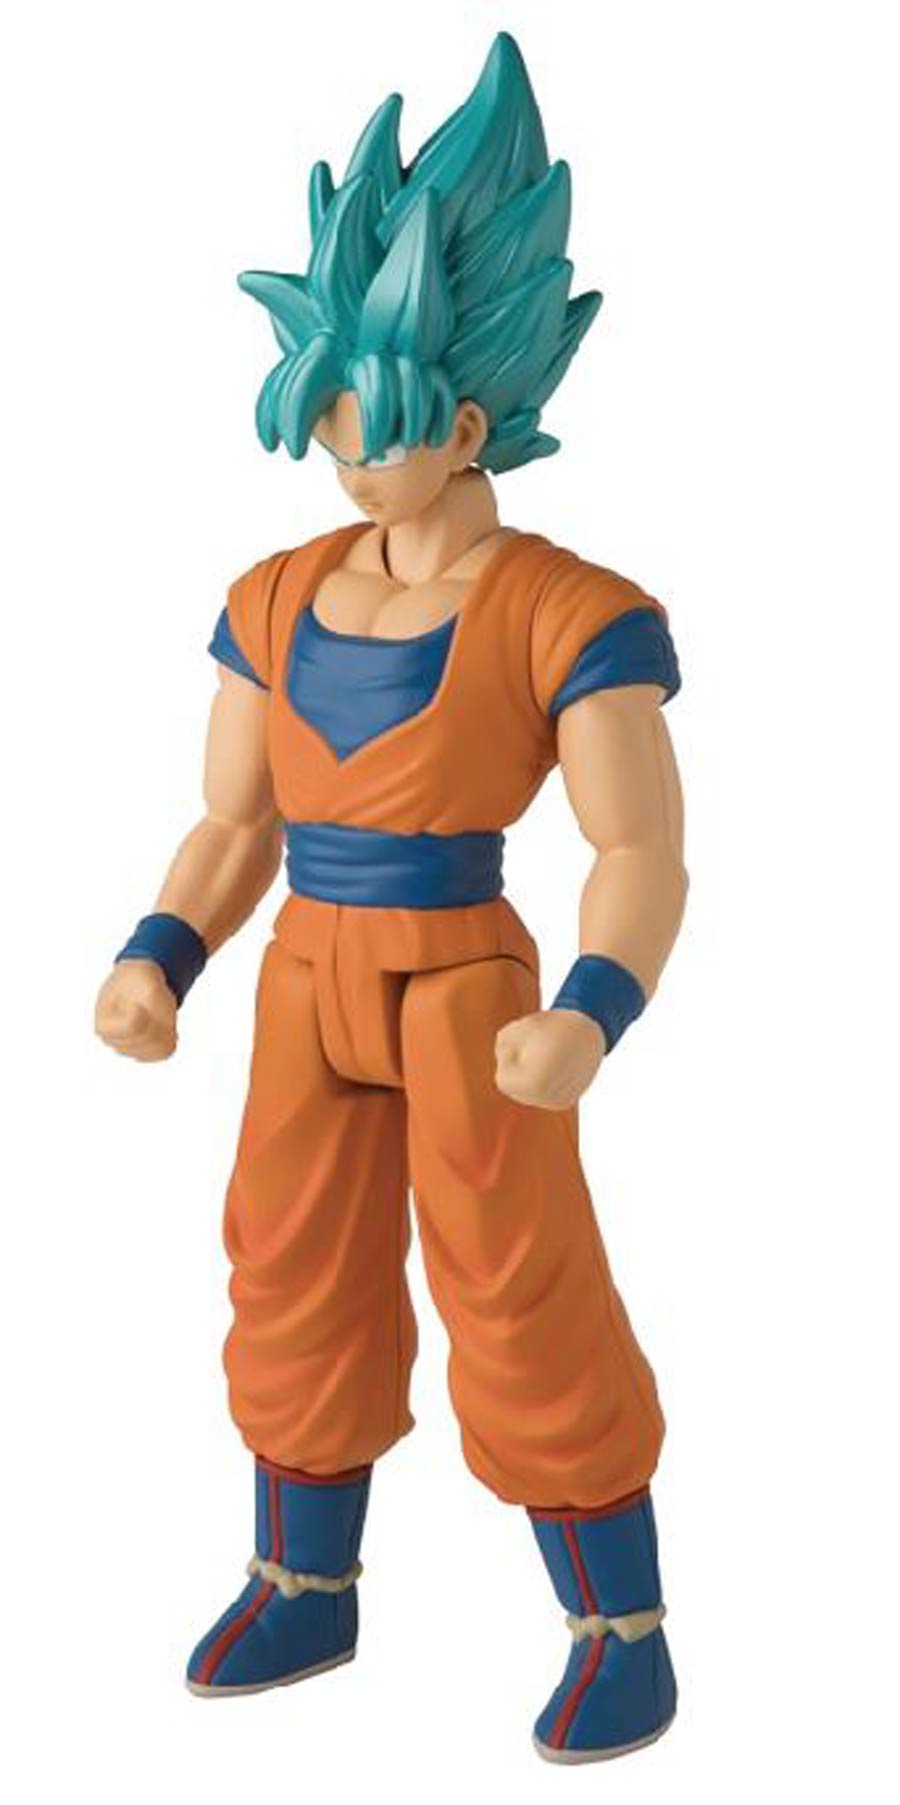 Dragon Ball Super Limit Breaker 12-Inch Action Figure Assortment A - Super Saiyan Blue Goku